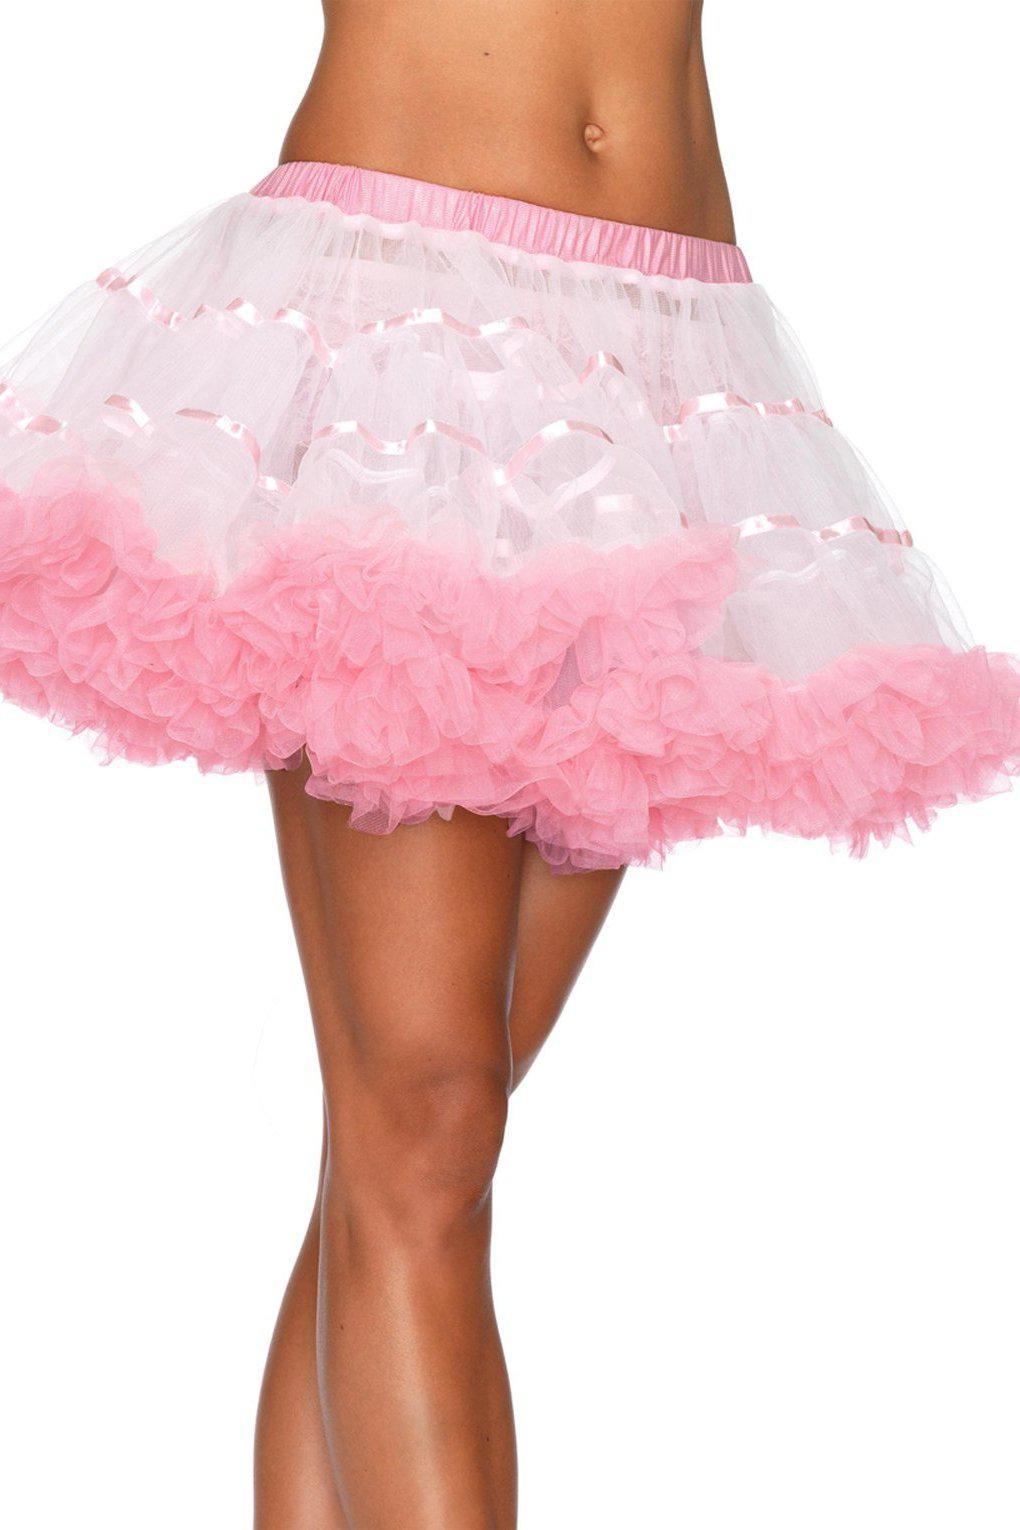 Layered Tulle Petticoat-TuTu + Petticoat-Leg Avenue-White-O/S-SEXYSHOES.COM